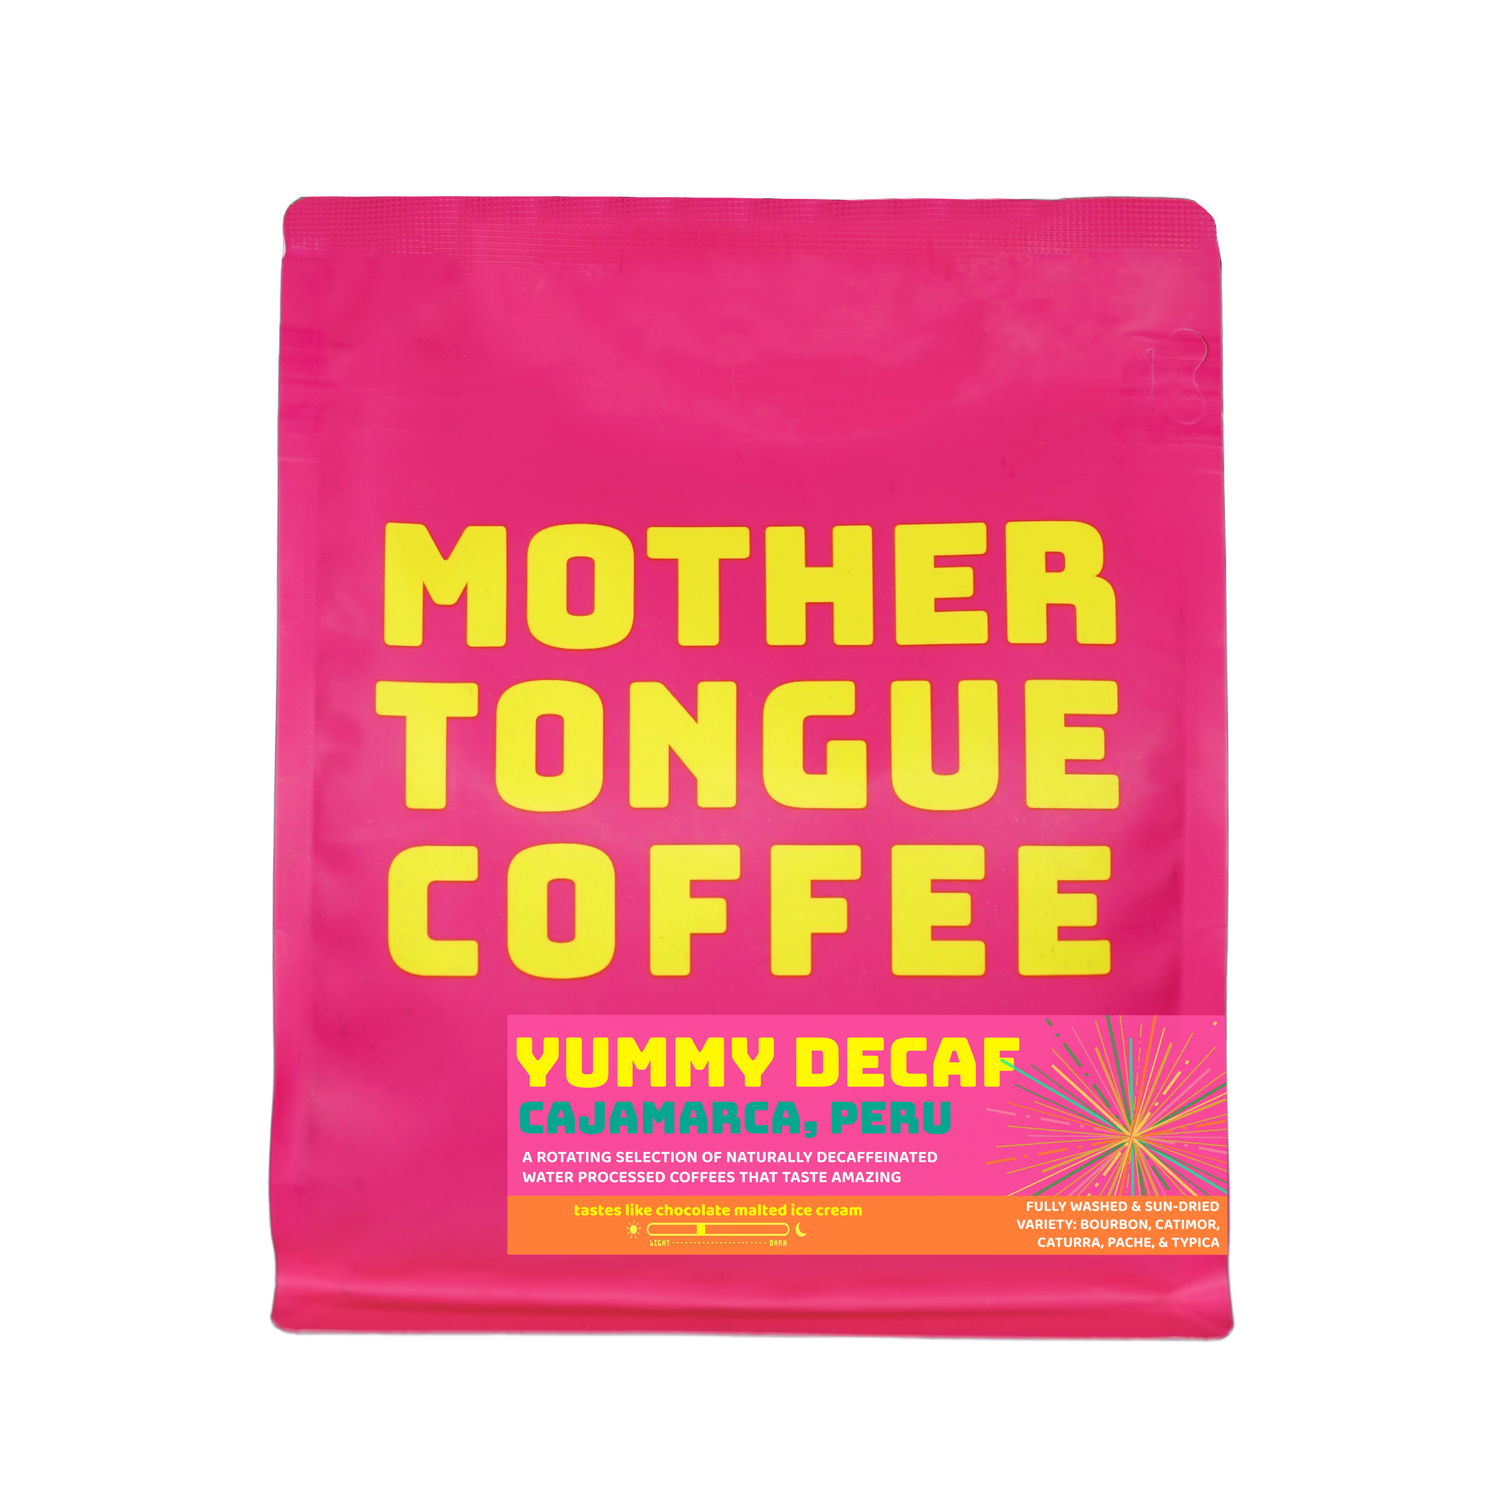 YUMMY DECAF - Cajamarca Peru - Mother Tongue Coffee